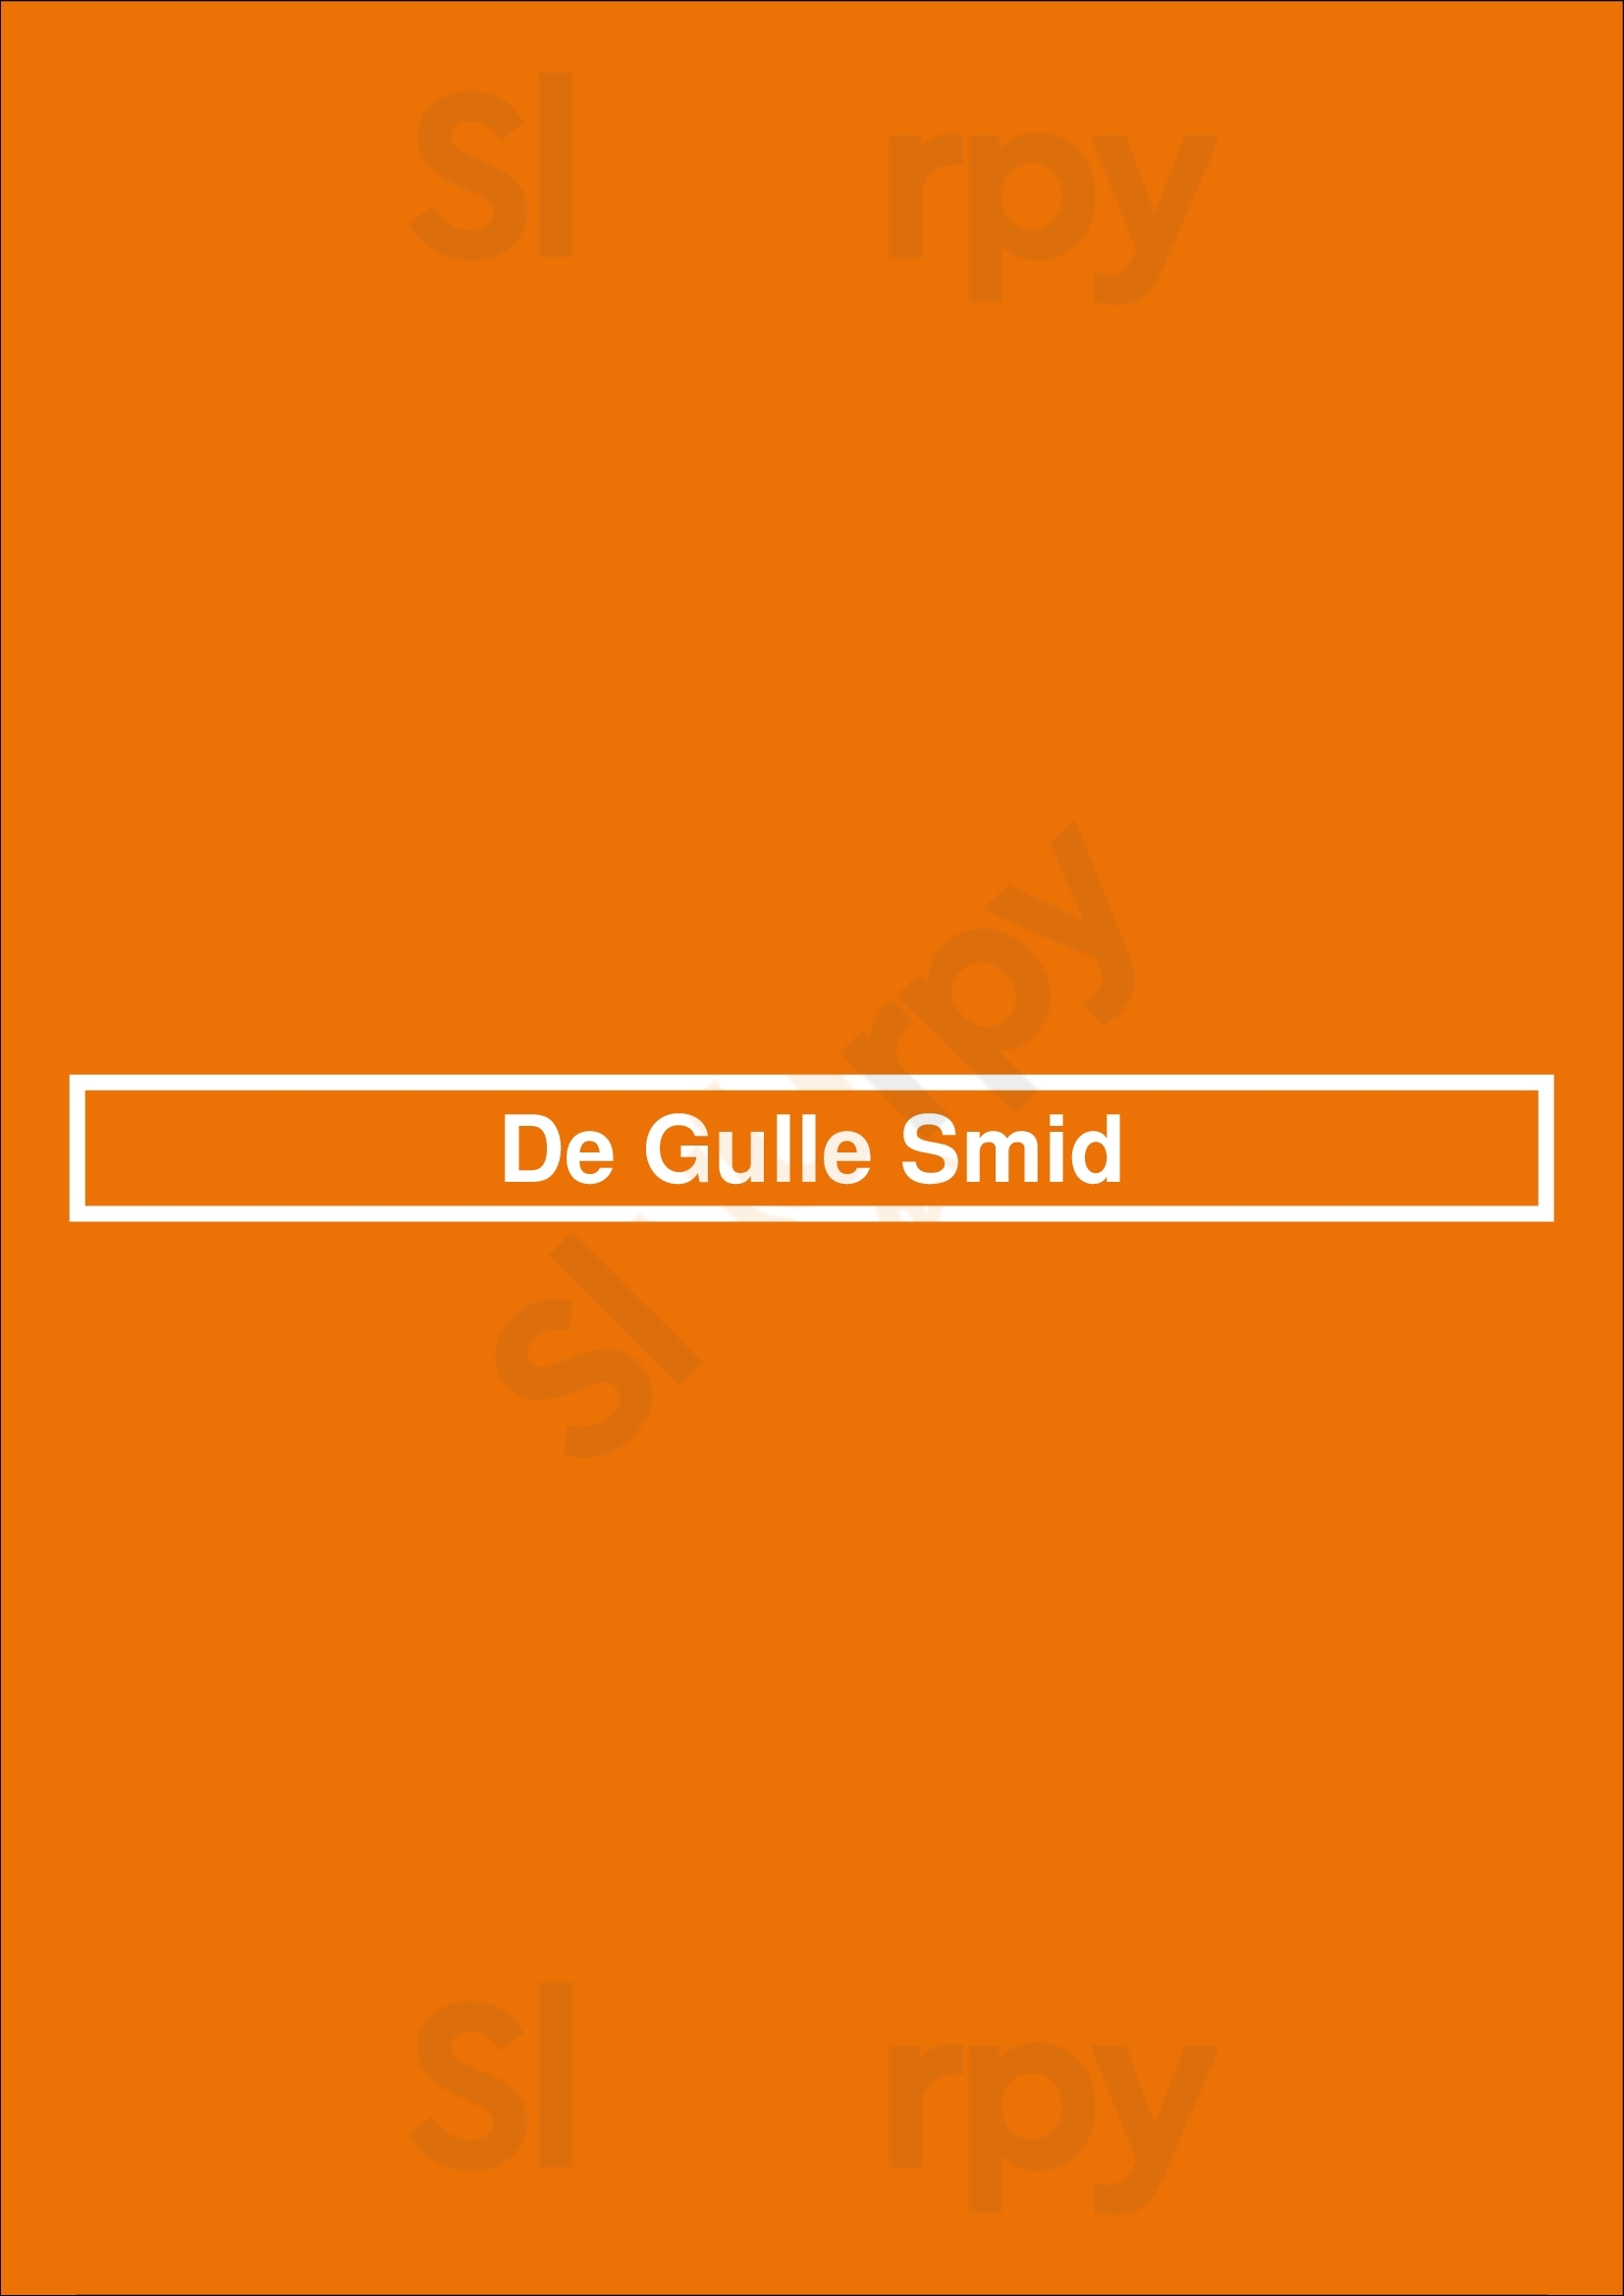 De Gulle Smid Winterswijk Menu - 1